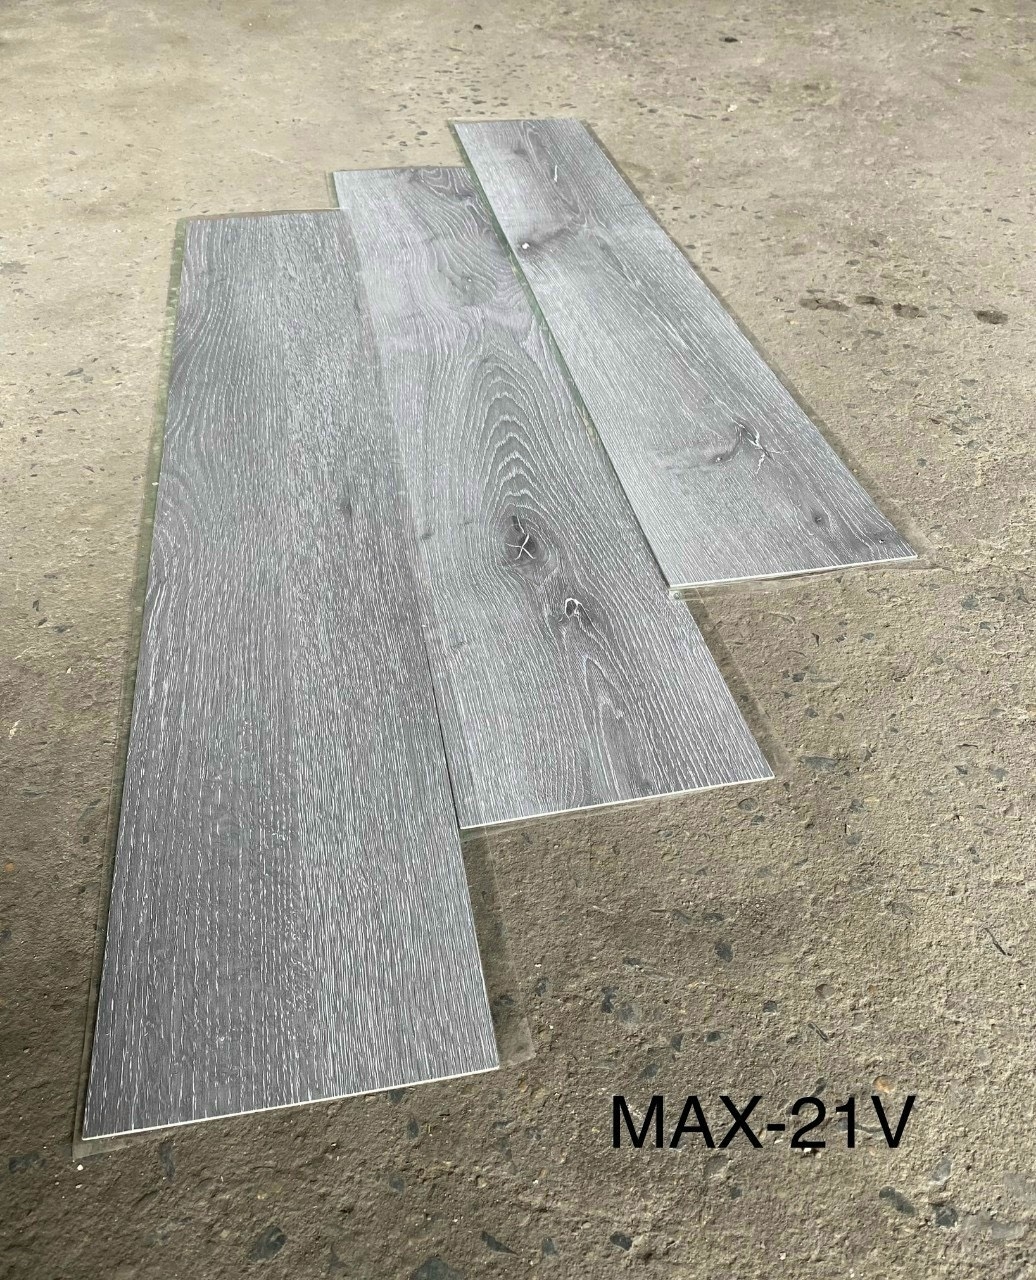 Sàn nhựa bóc dán  MAX-21V